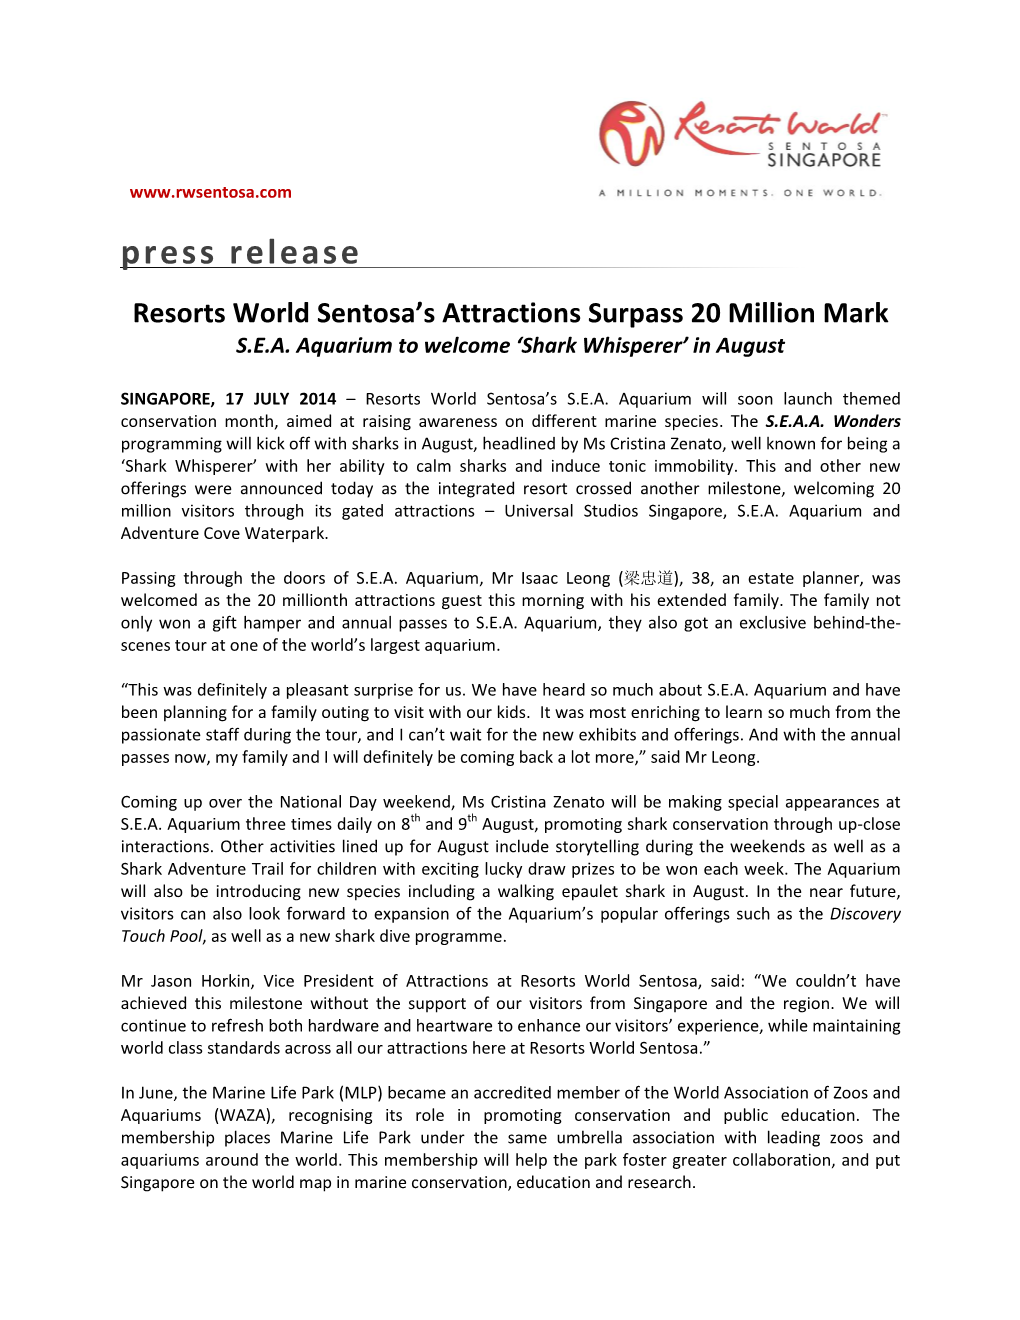 Resorts World Sentosa's Attractions Surpass 20 Million Mark